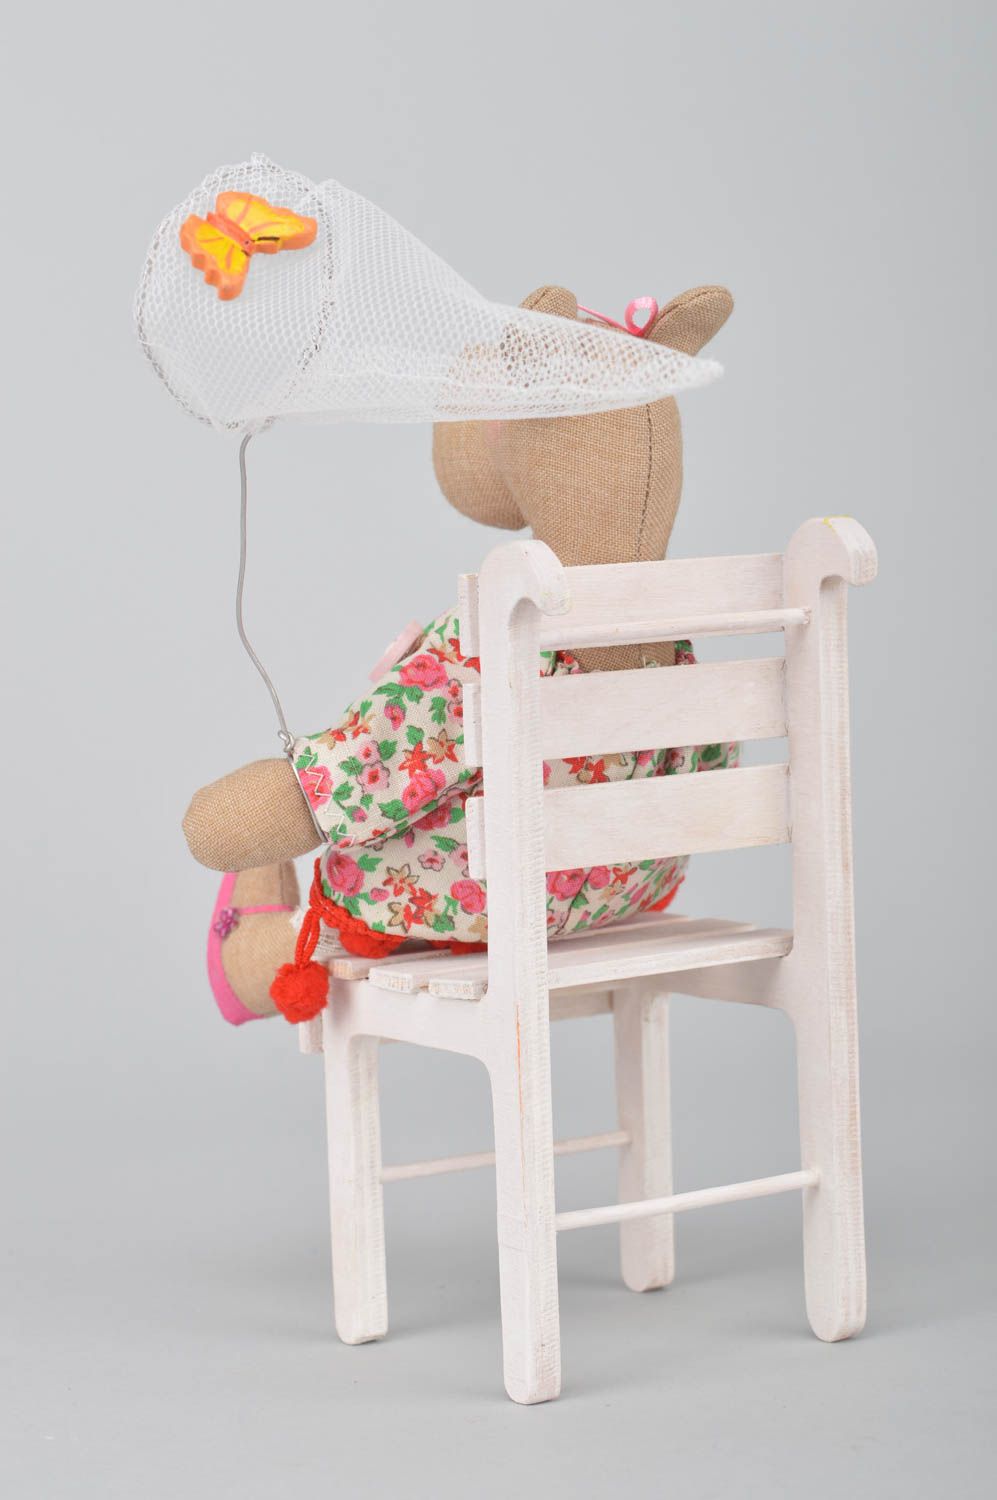 Мягкая игрушка ручной работы для дома из хлопка Бегемотик в платье на стуле фото 3